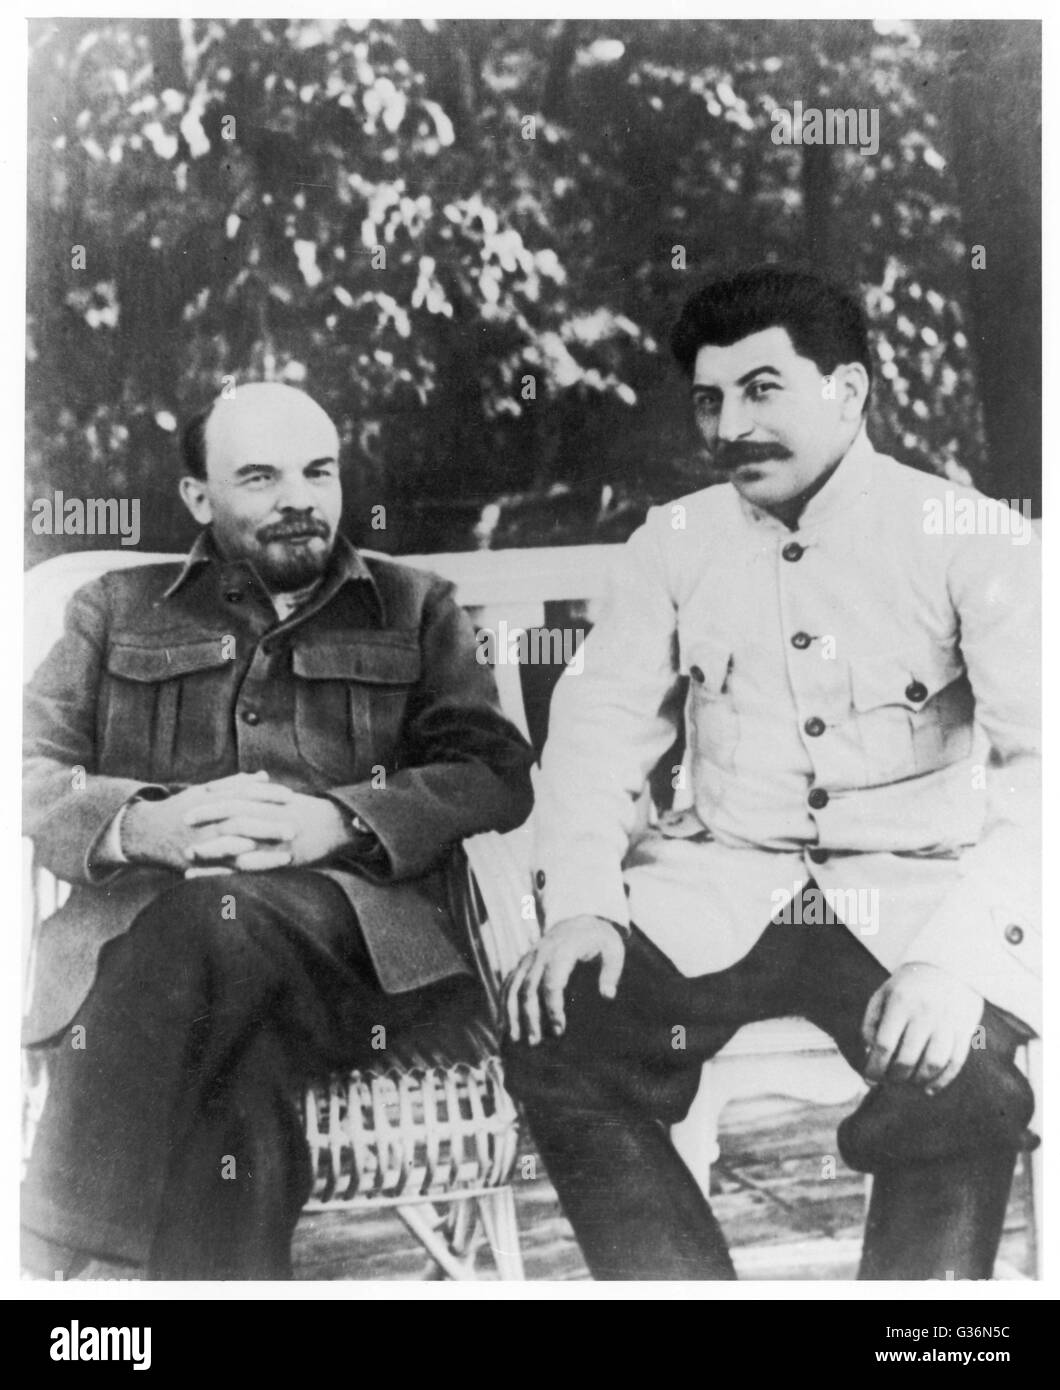 Vladimir Ilyich Lenin (1870-1924) und Josef Stalin (1879-1953), kommunistischen russischen Führer, sitzen auf einer Bank.       Datum: ca. 1920 Stockfoto